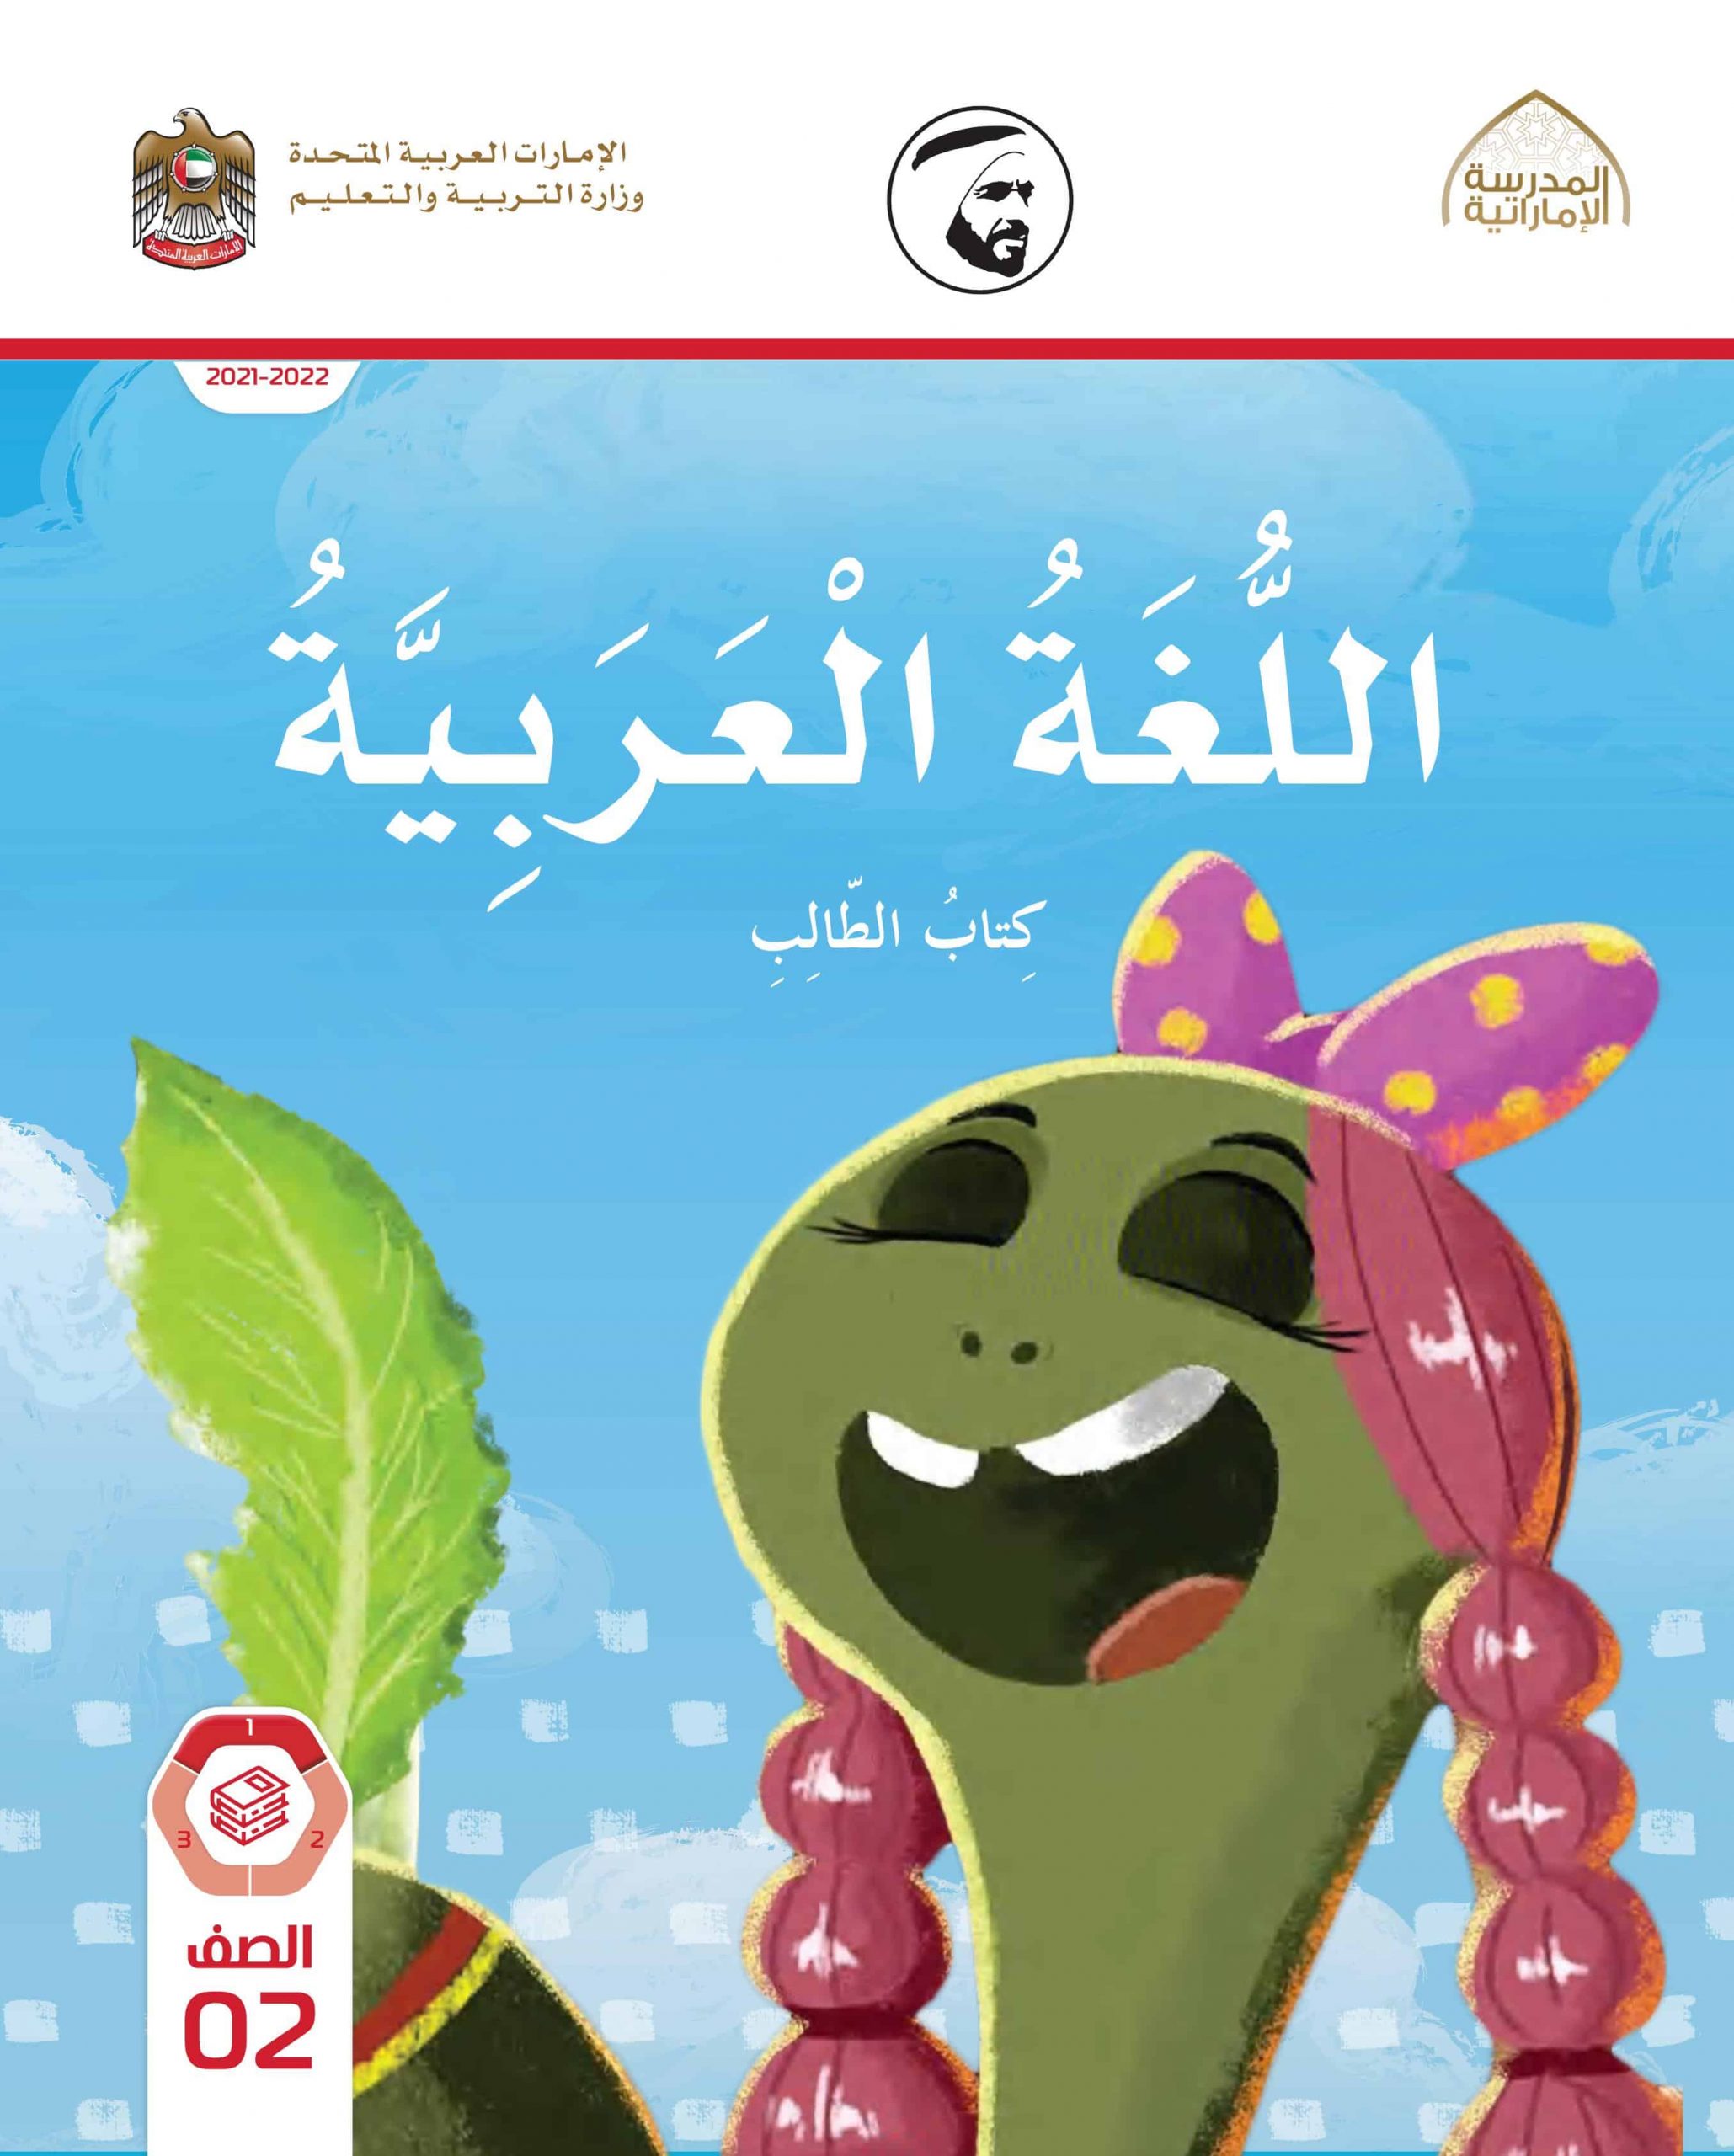 كتاب الطالب الفصل الدراسي الأول 2021-2022 الصف الثاني مادة اللغة العربية